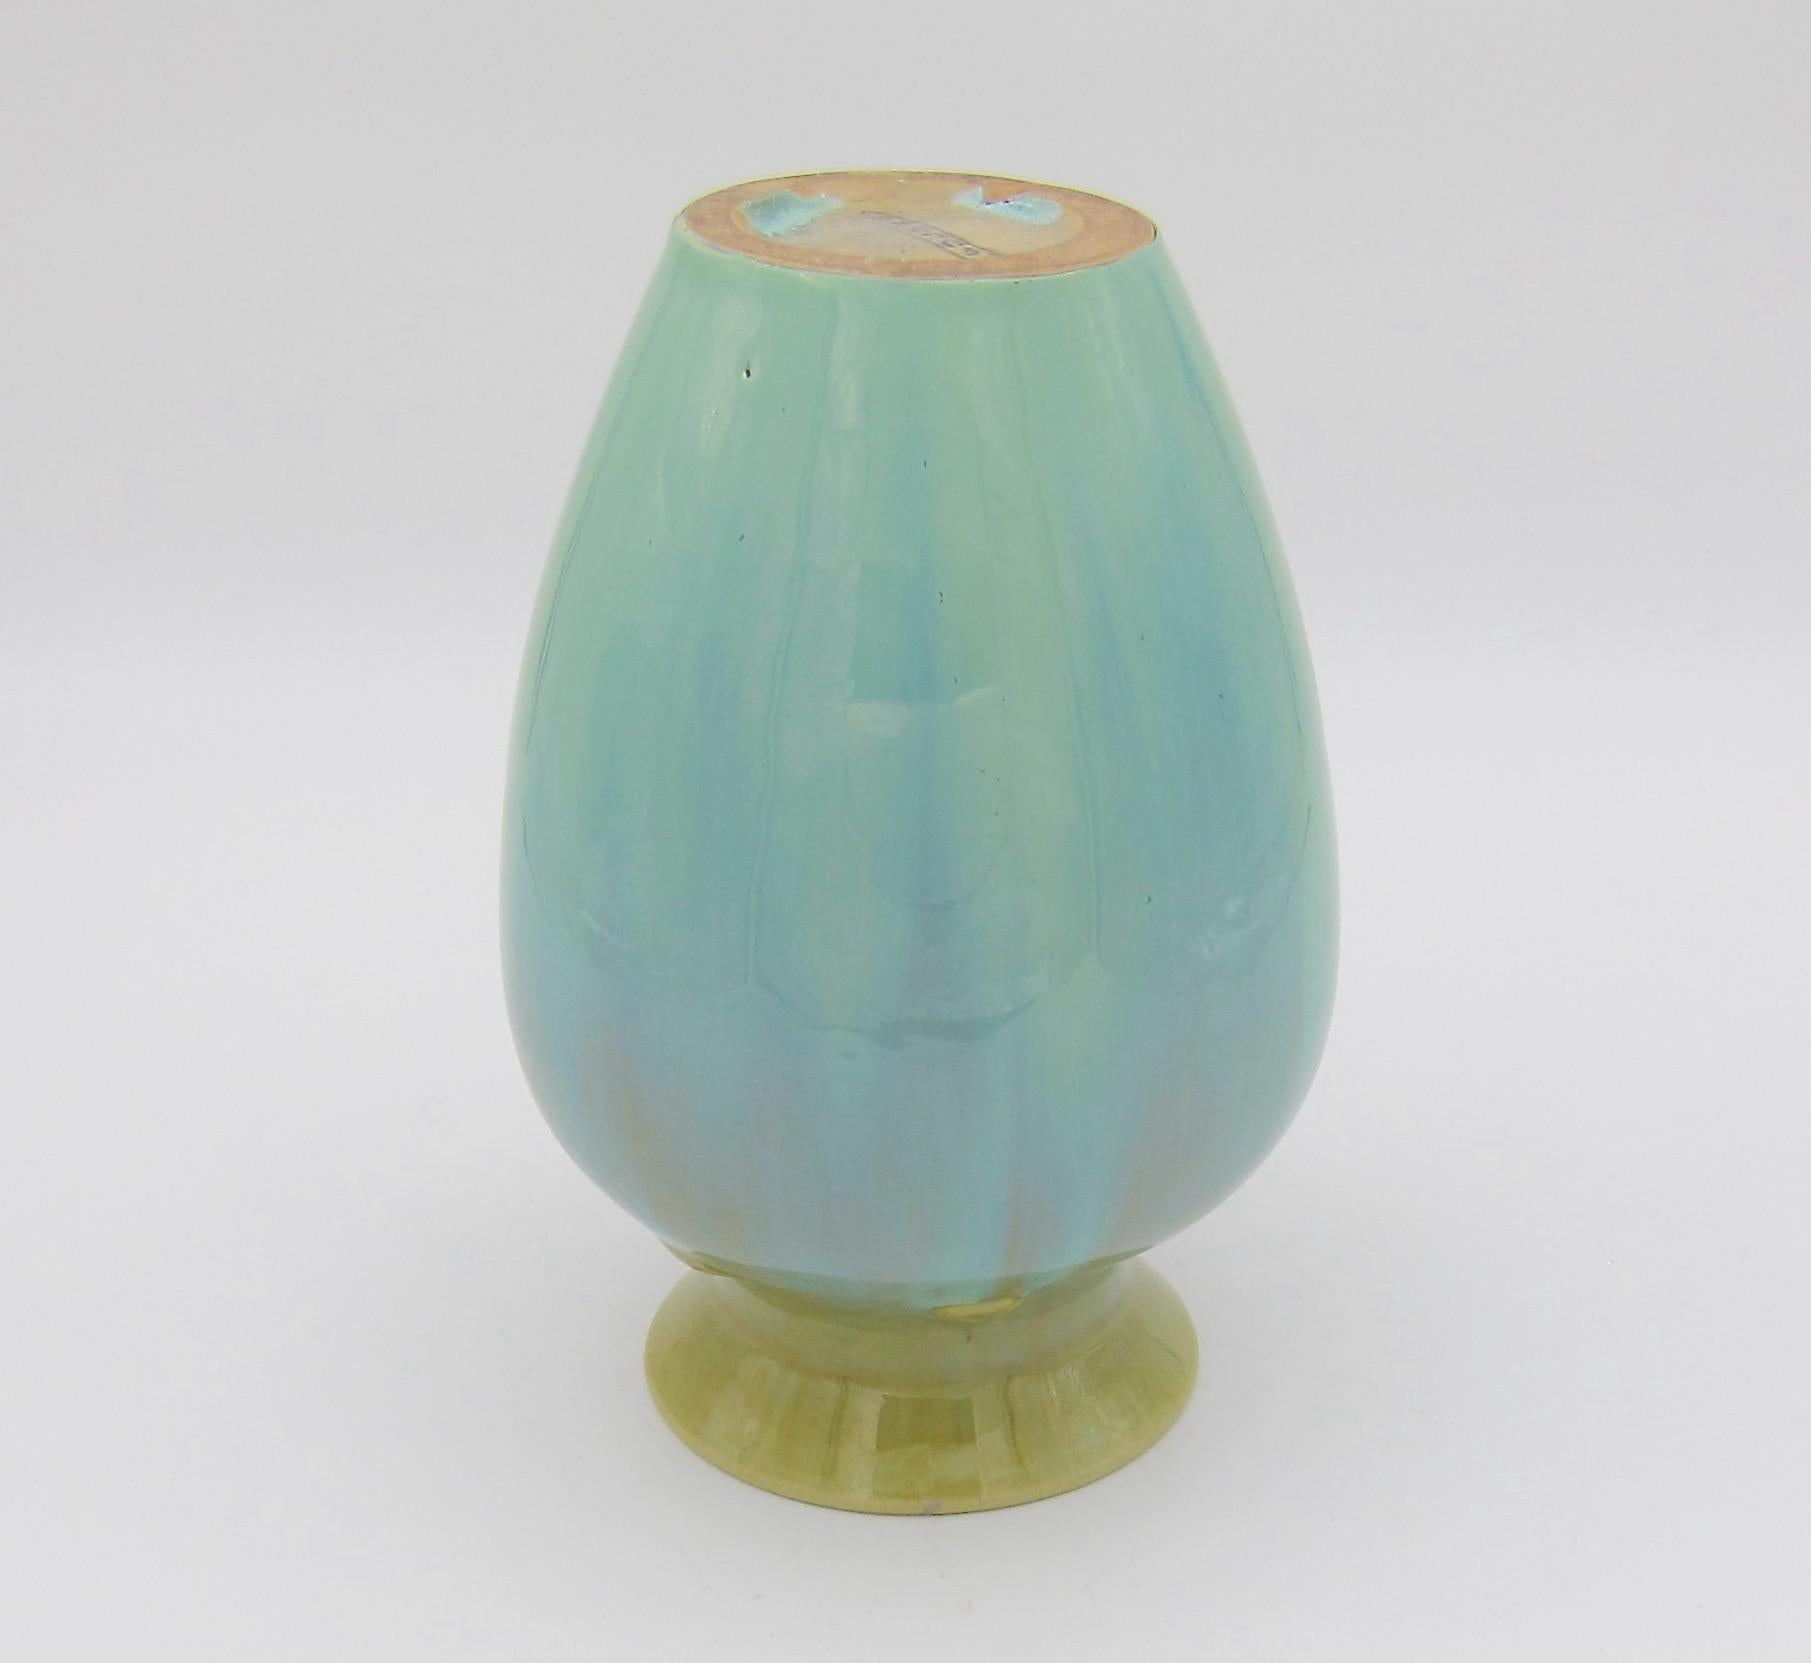 Vintage Fulper Pottery Vase with a Flambé Glaze 6